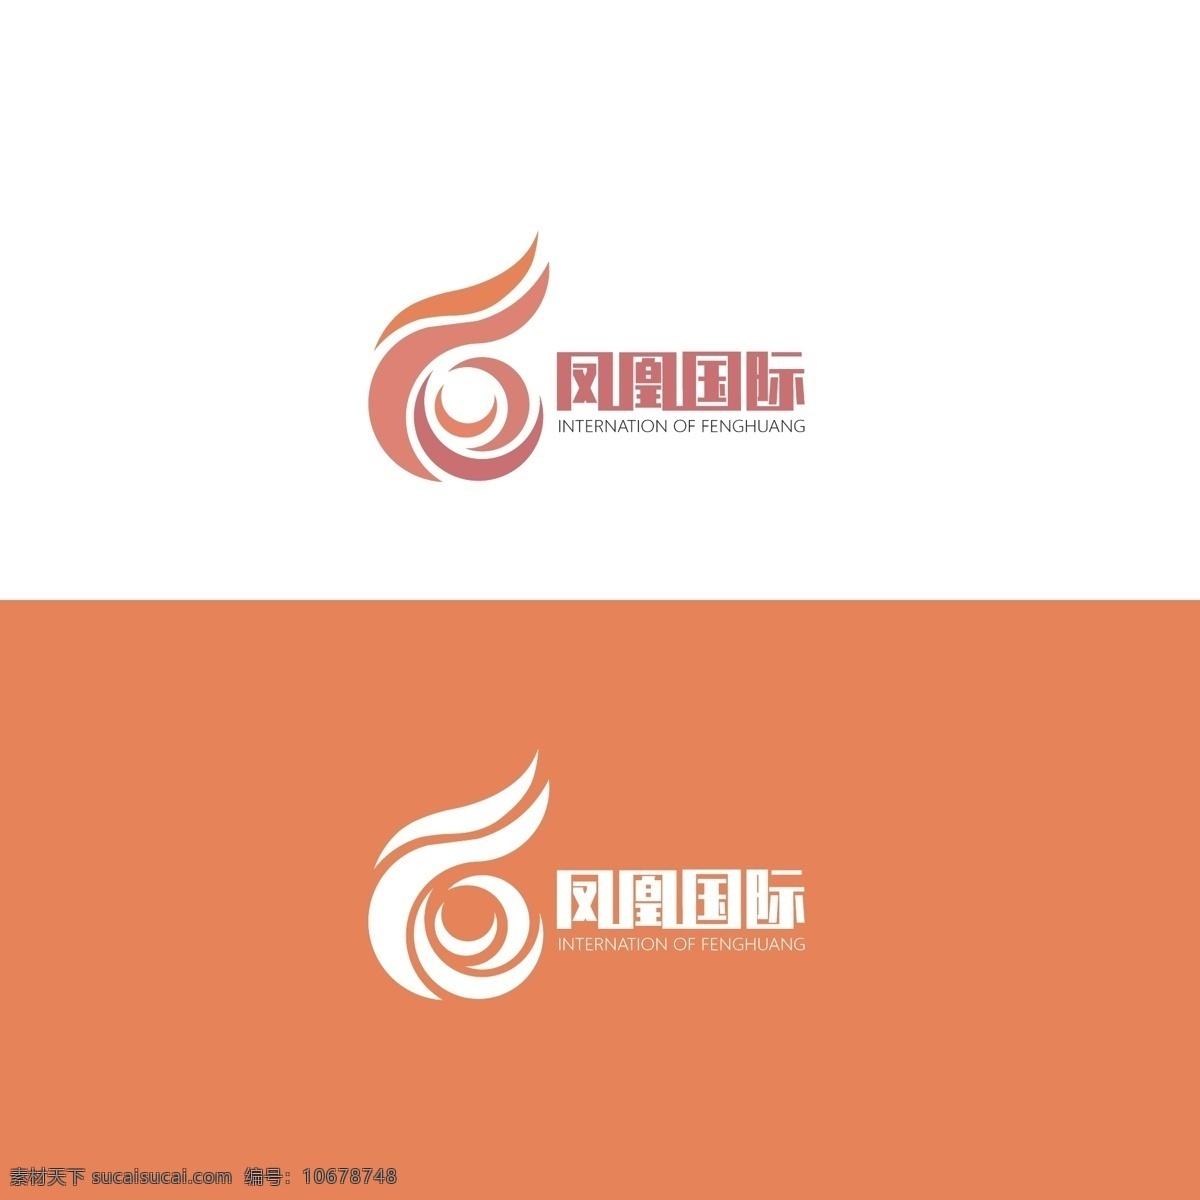 凤凰 图标 简约 企业 商业 标志 火焰 鸟 国际 logo